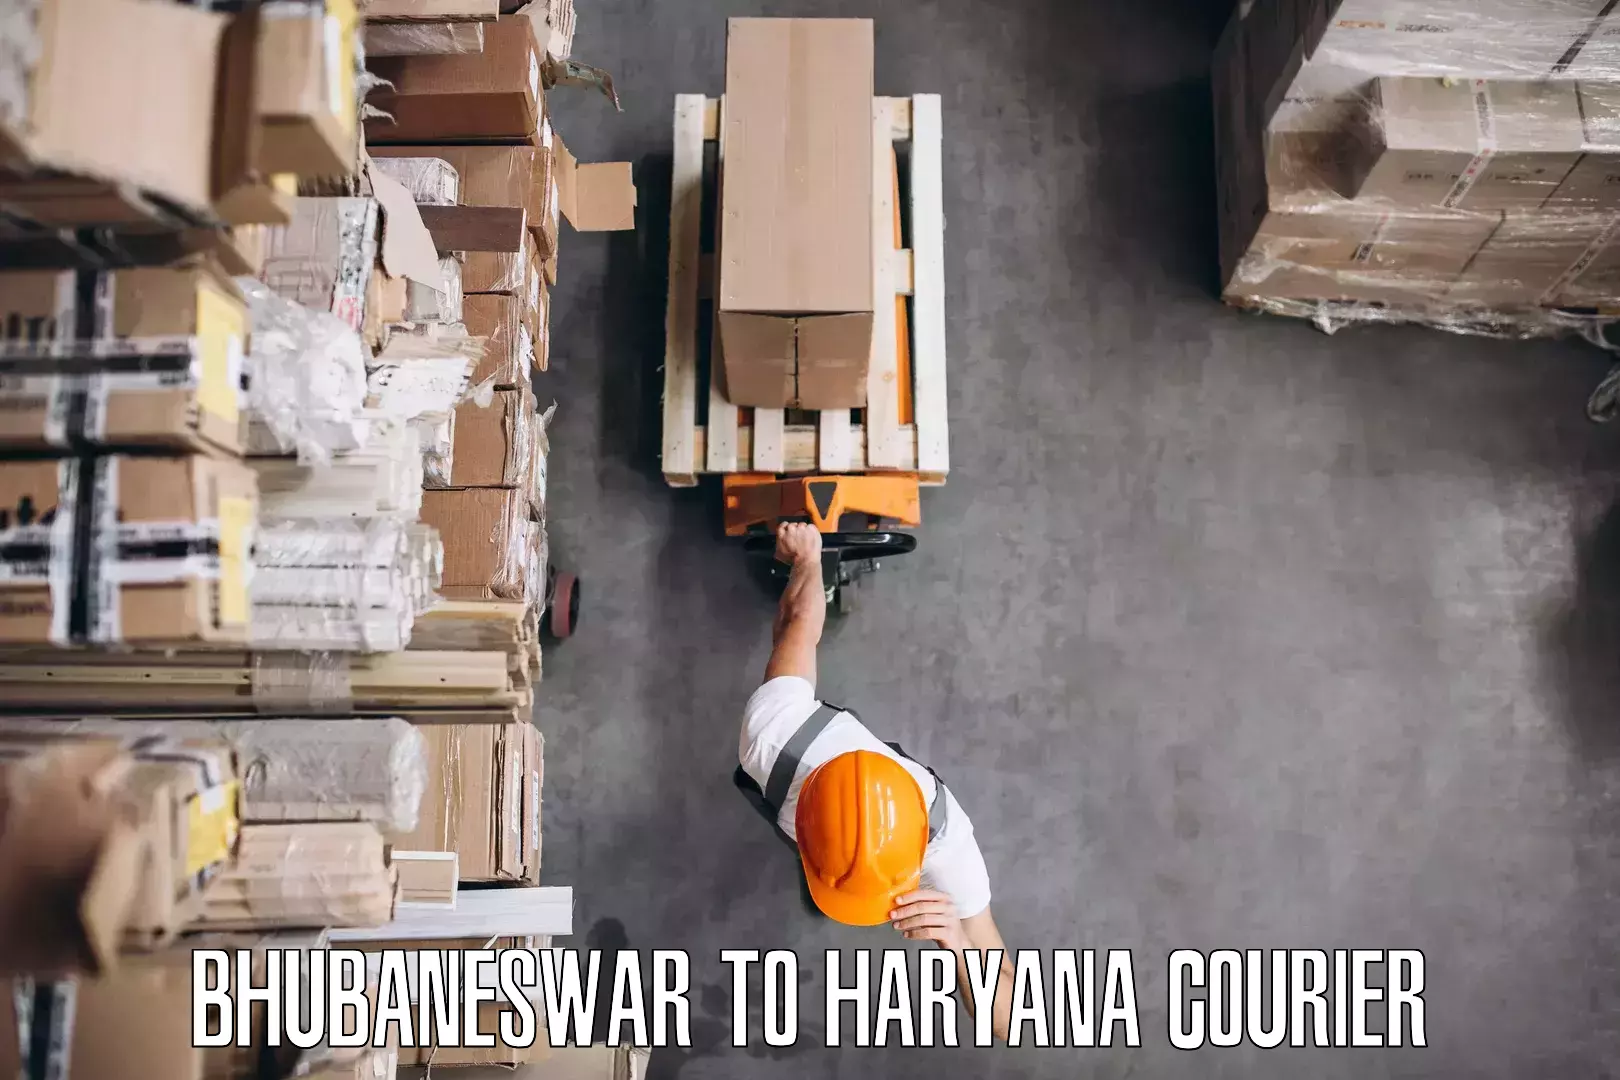 Furniture moving experts Bhubaneswar to Hansi